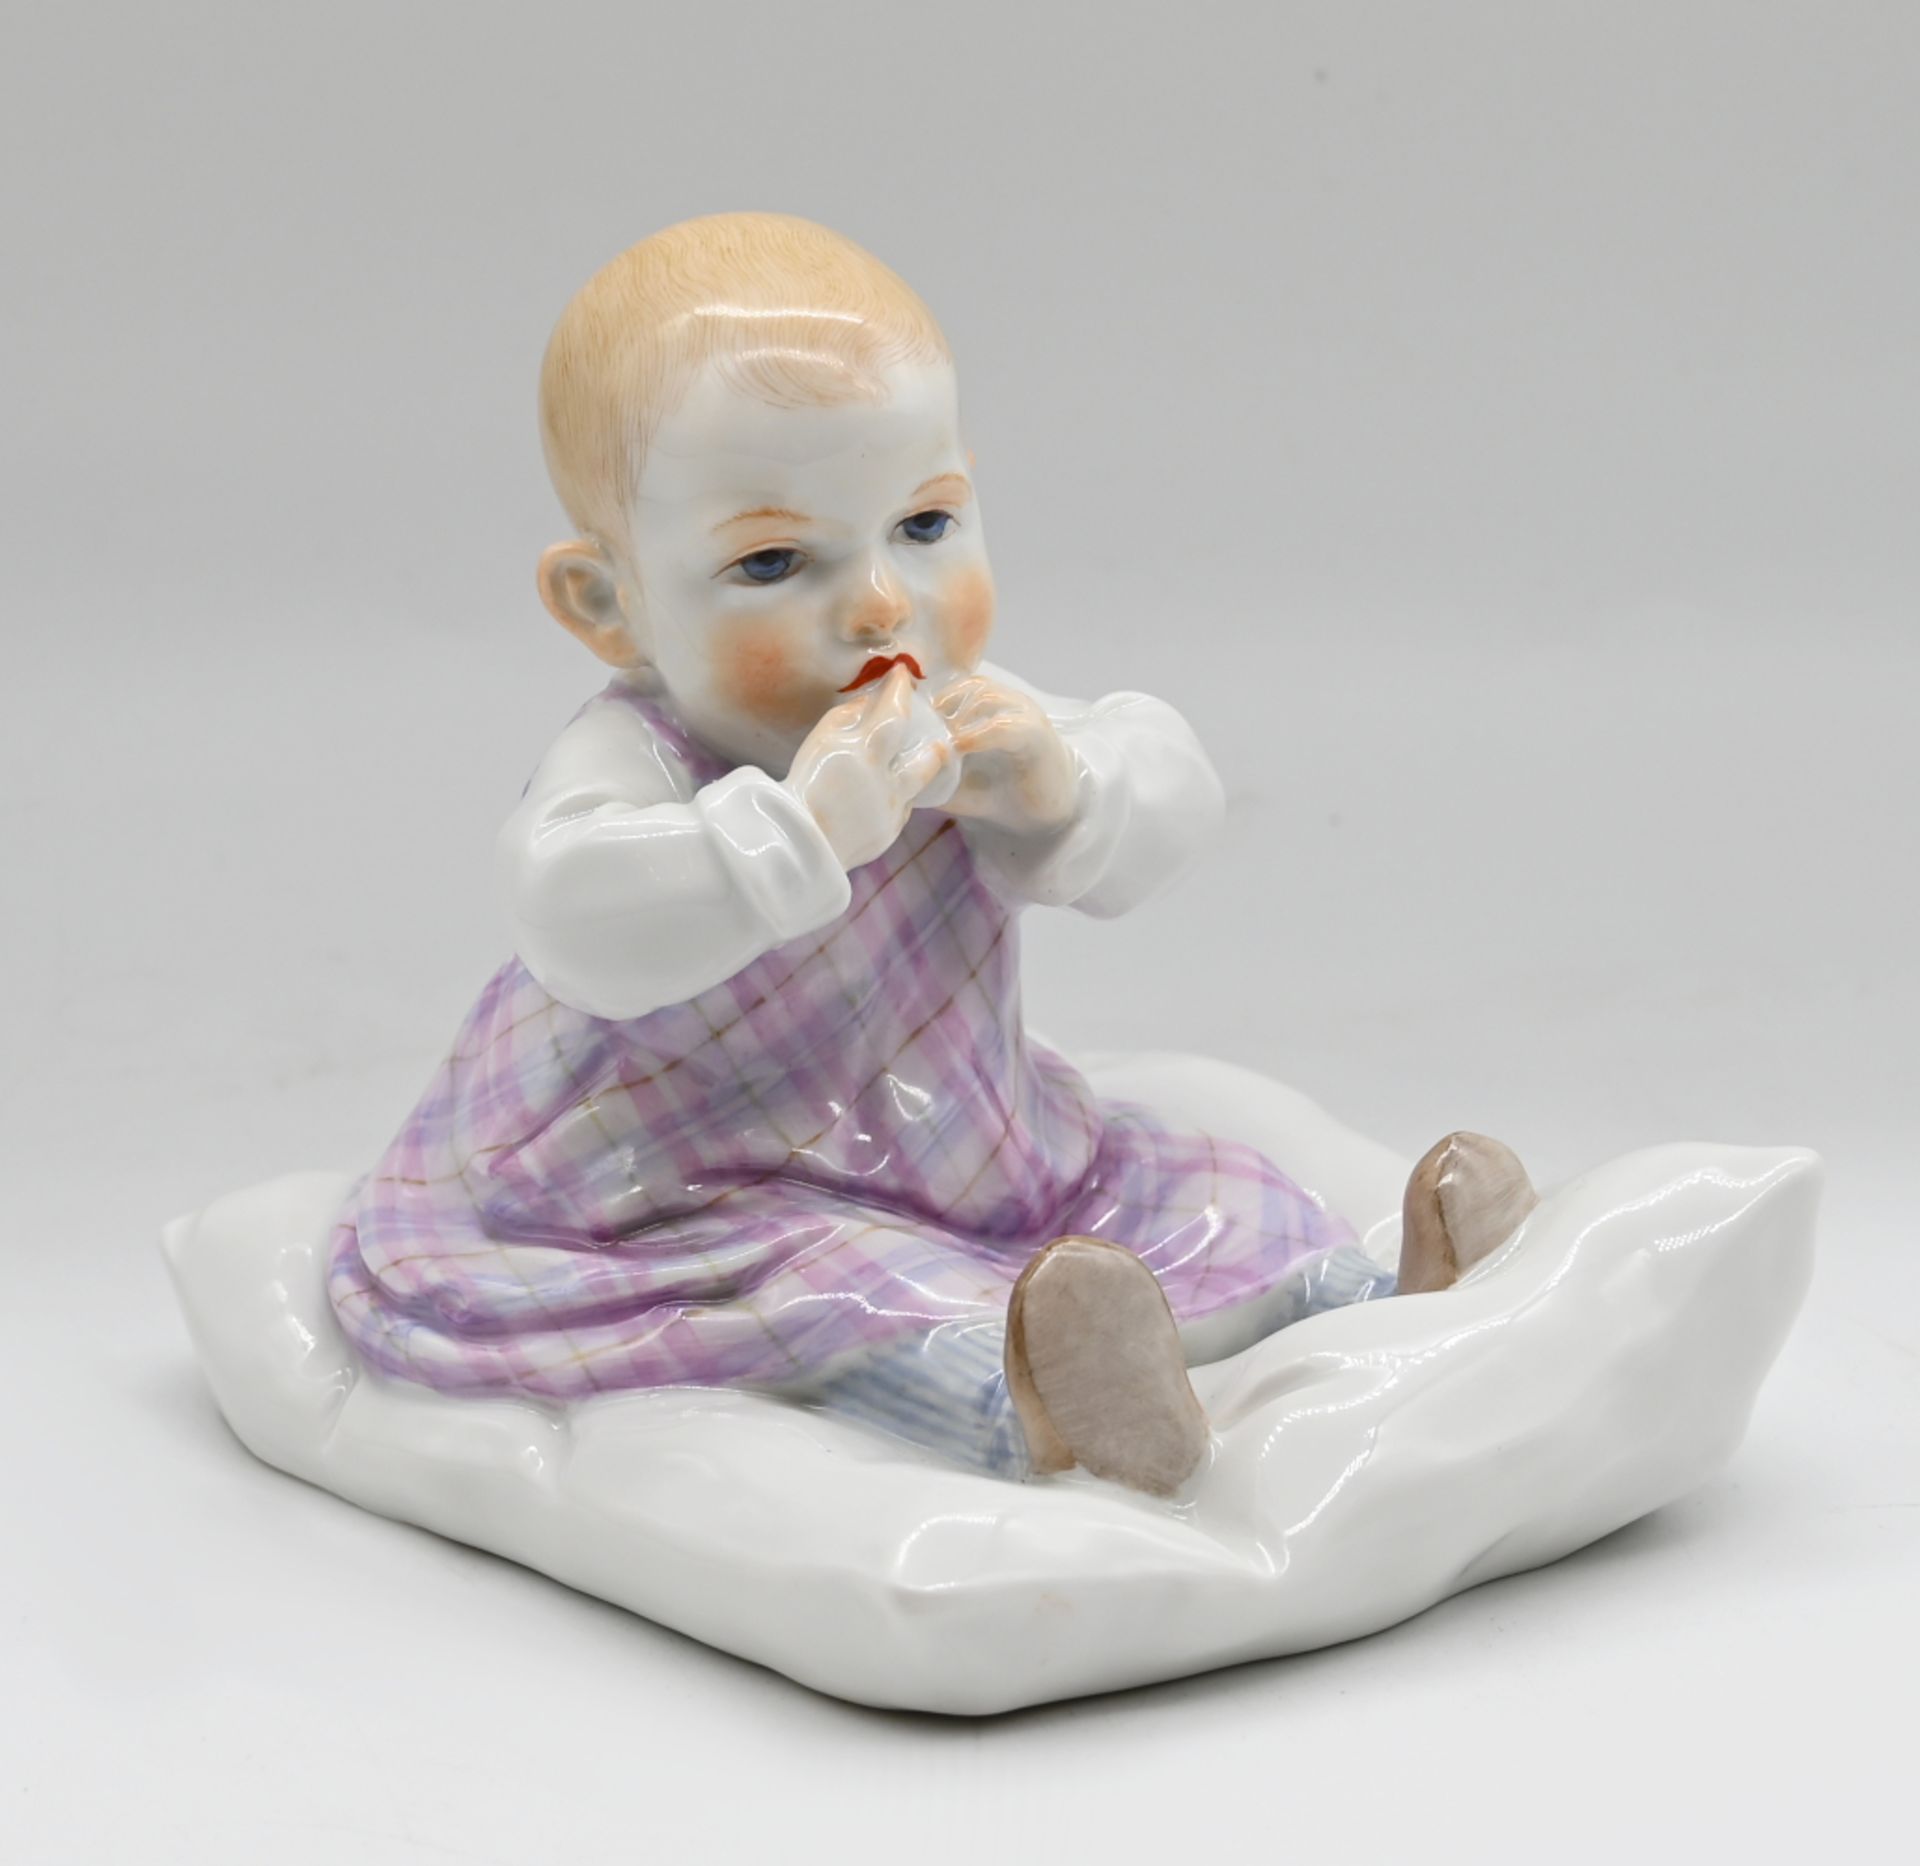 1 Figur Porzellan MEISSEN (1974), sog. "Hentschel-Kind", "Kind auf Kissen sitzend", Entwurf Julius K